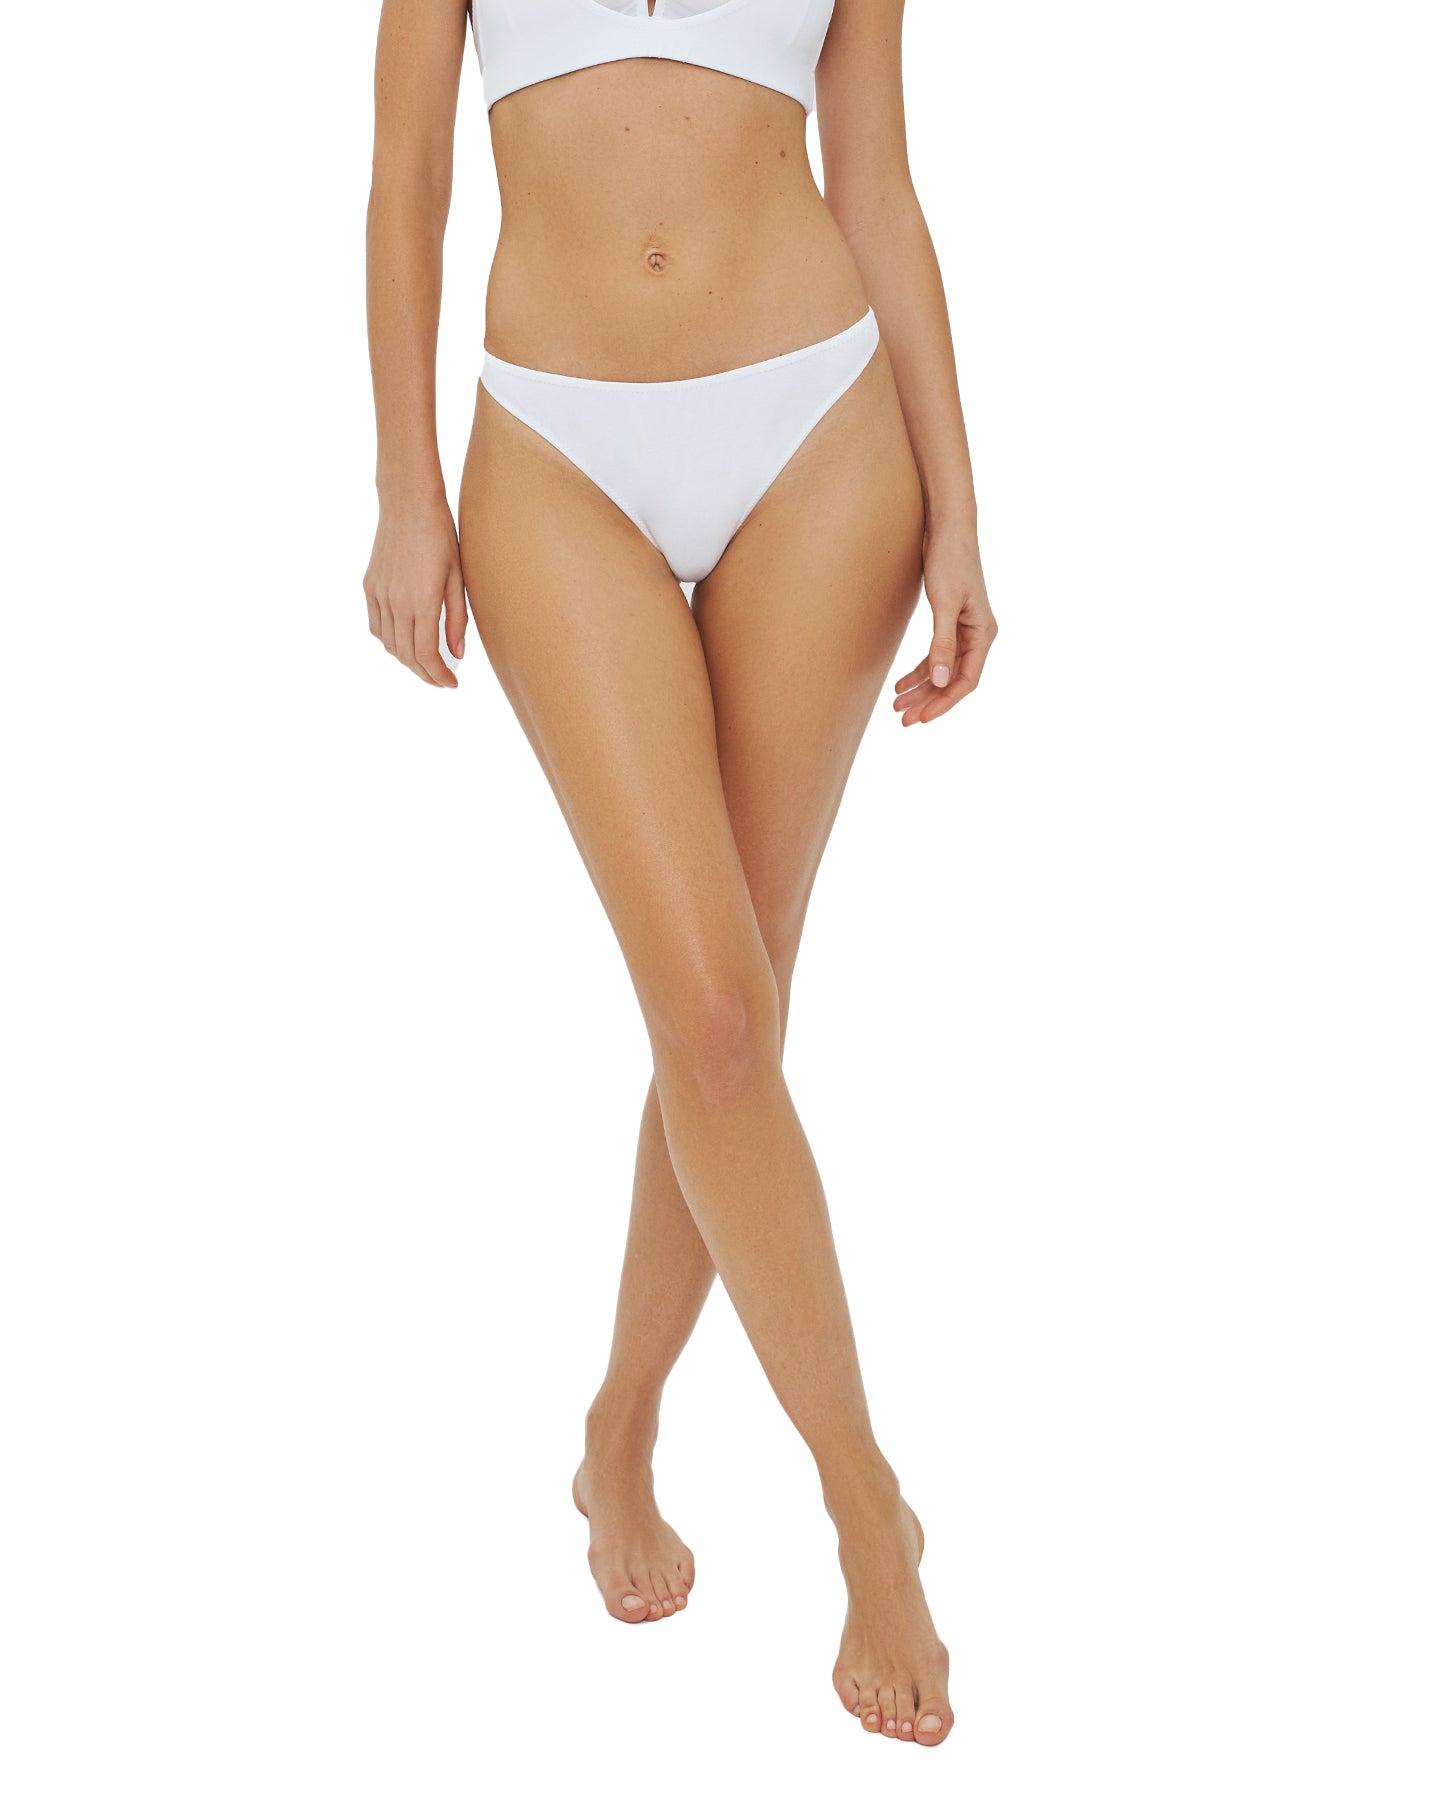 White organic cotton underwear | Women's underwear | high waisted thong | Lyzawear